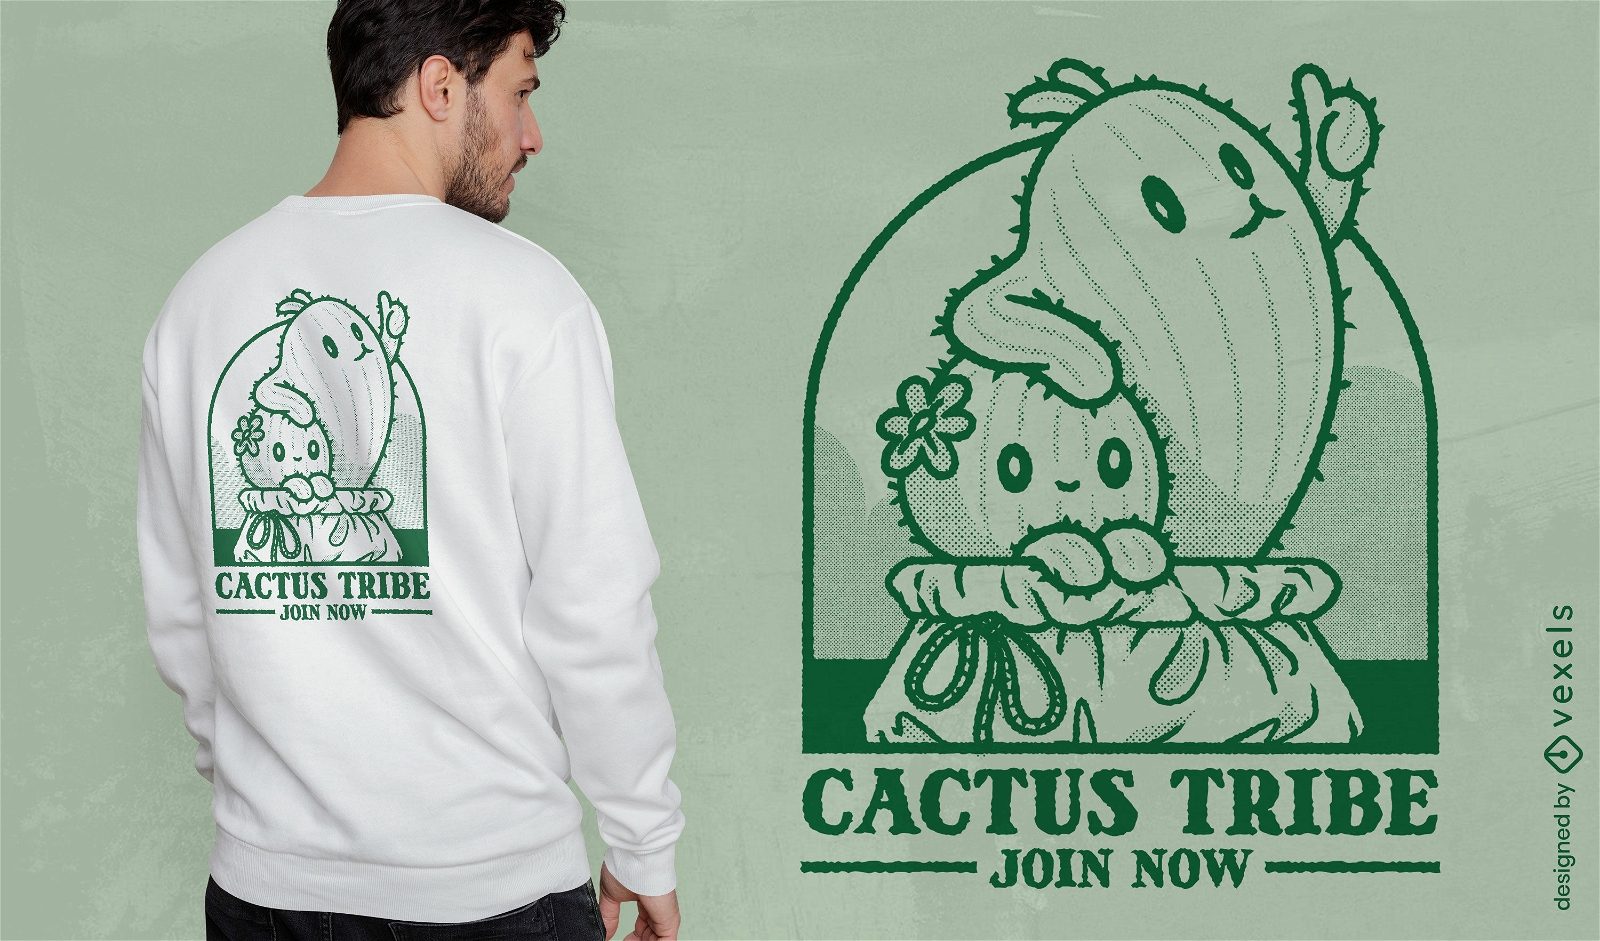 Diseño de camiseta de membresía de la tribu cactus.